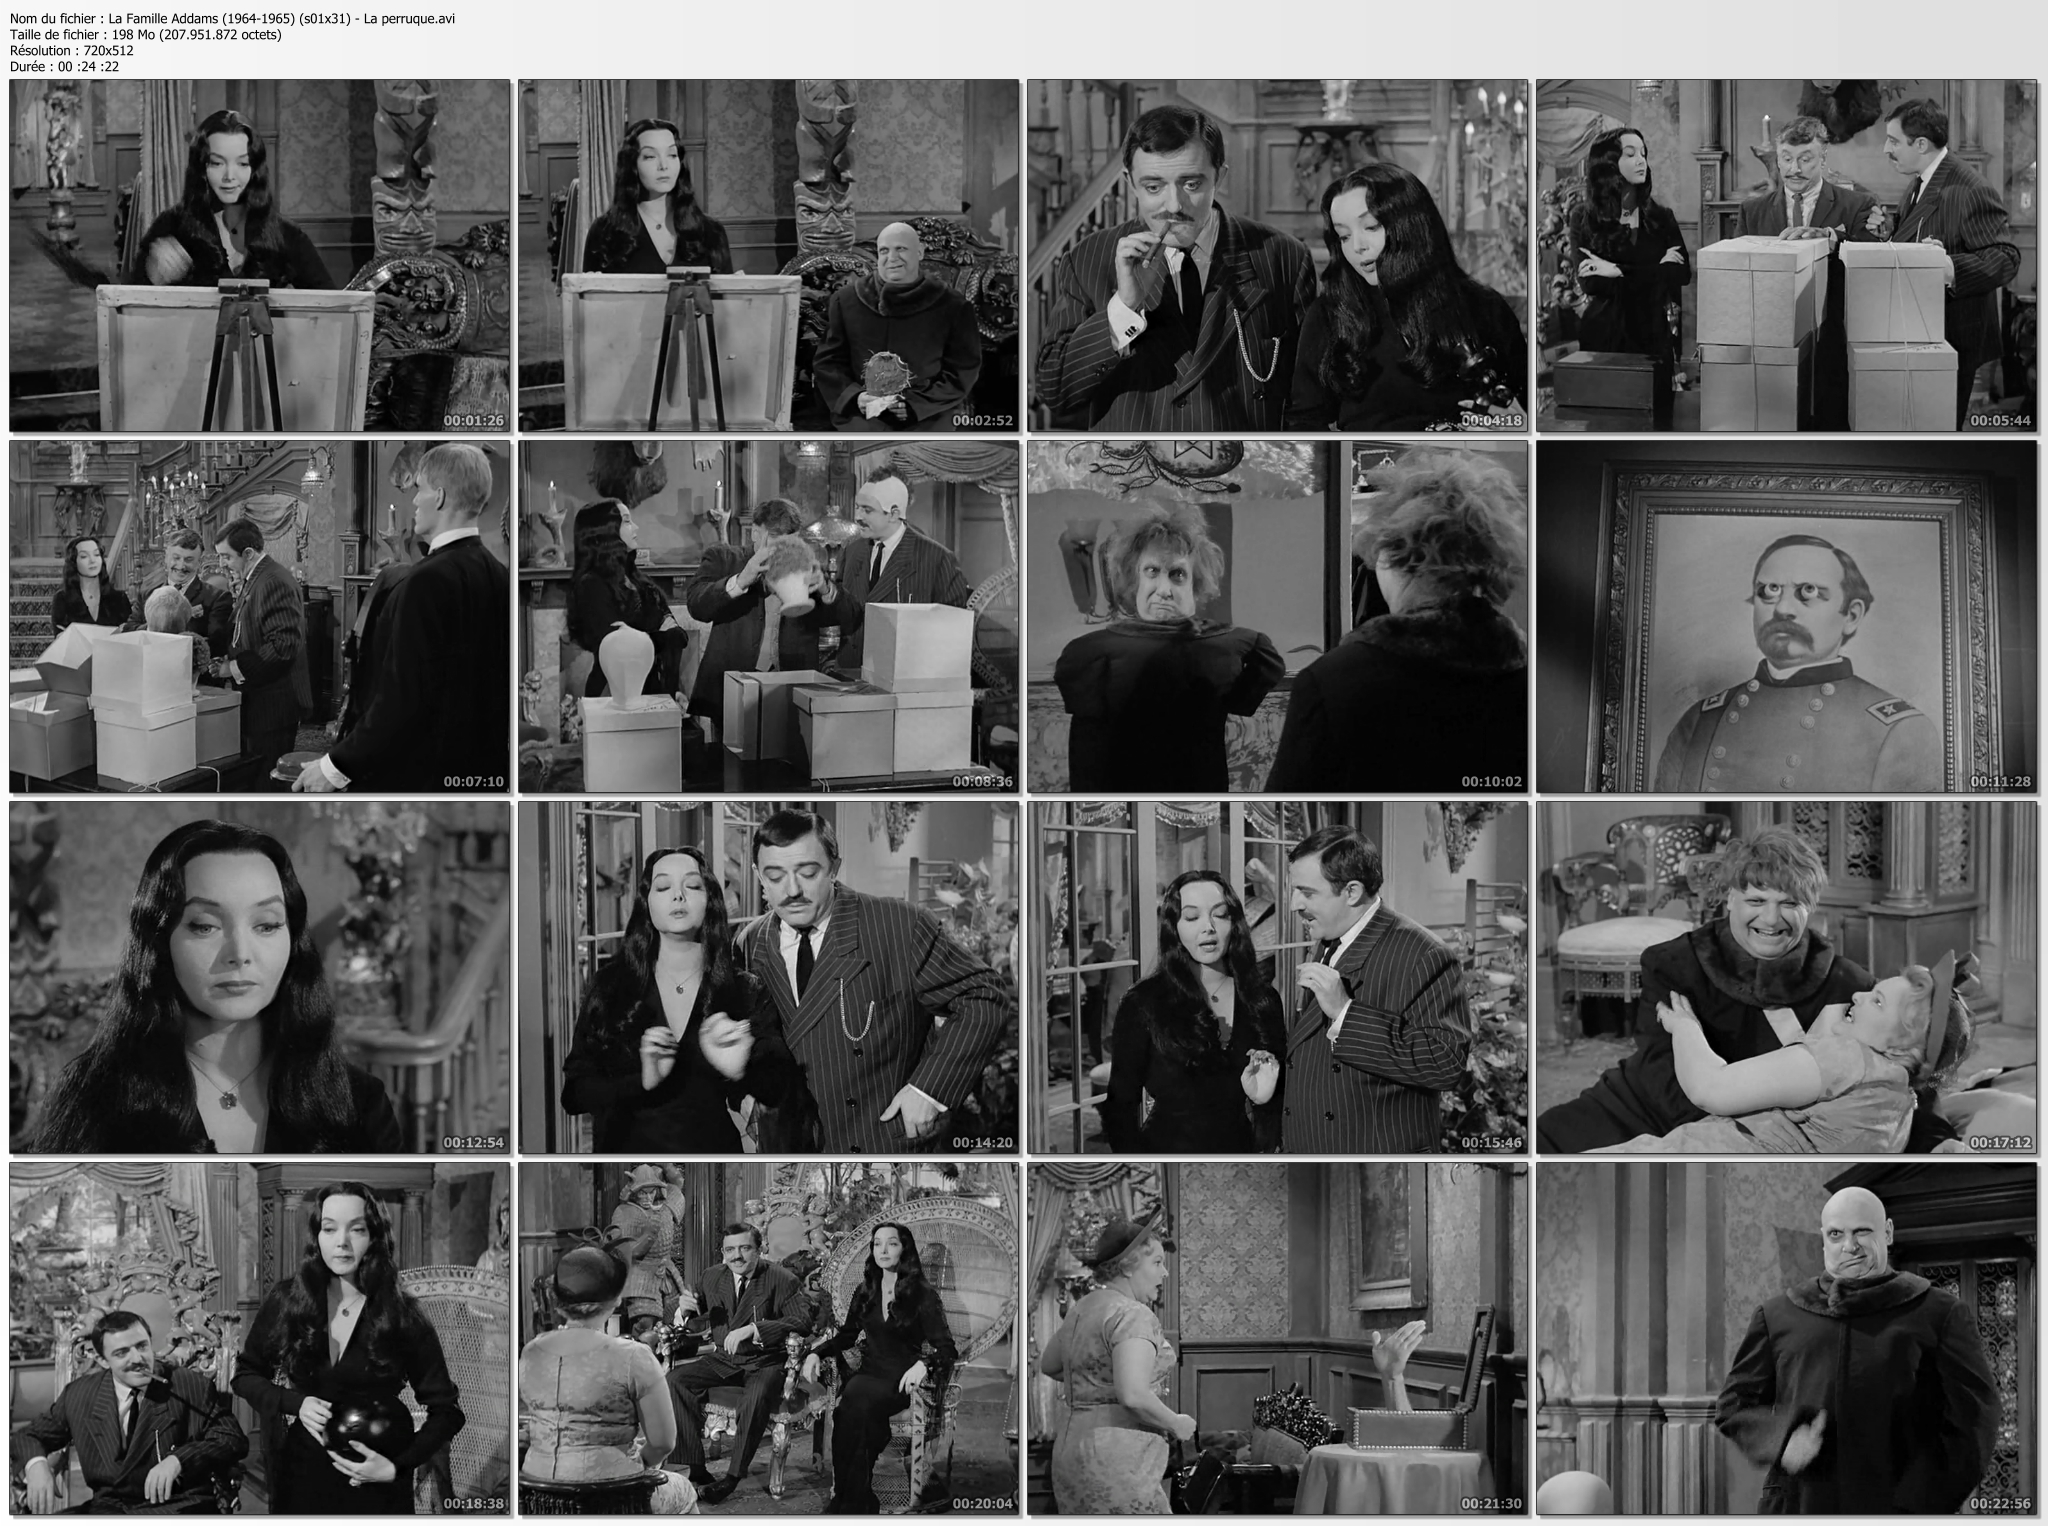 La Famille Addams (1964-1965) (saison 01): Résumé des épisodes 01 à 05